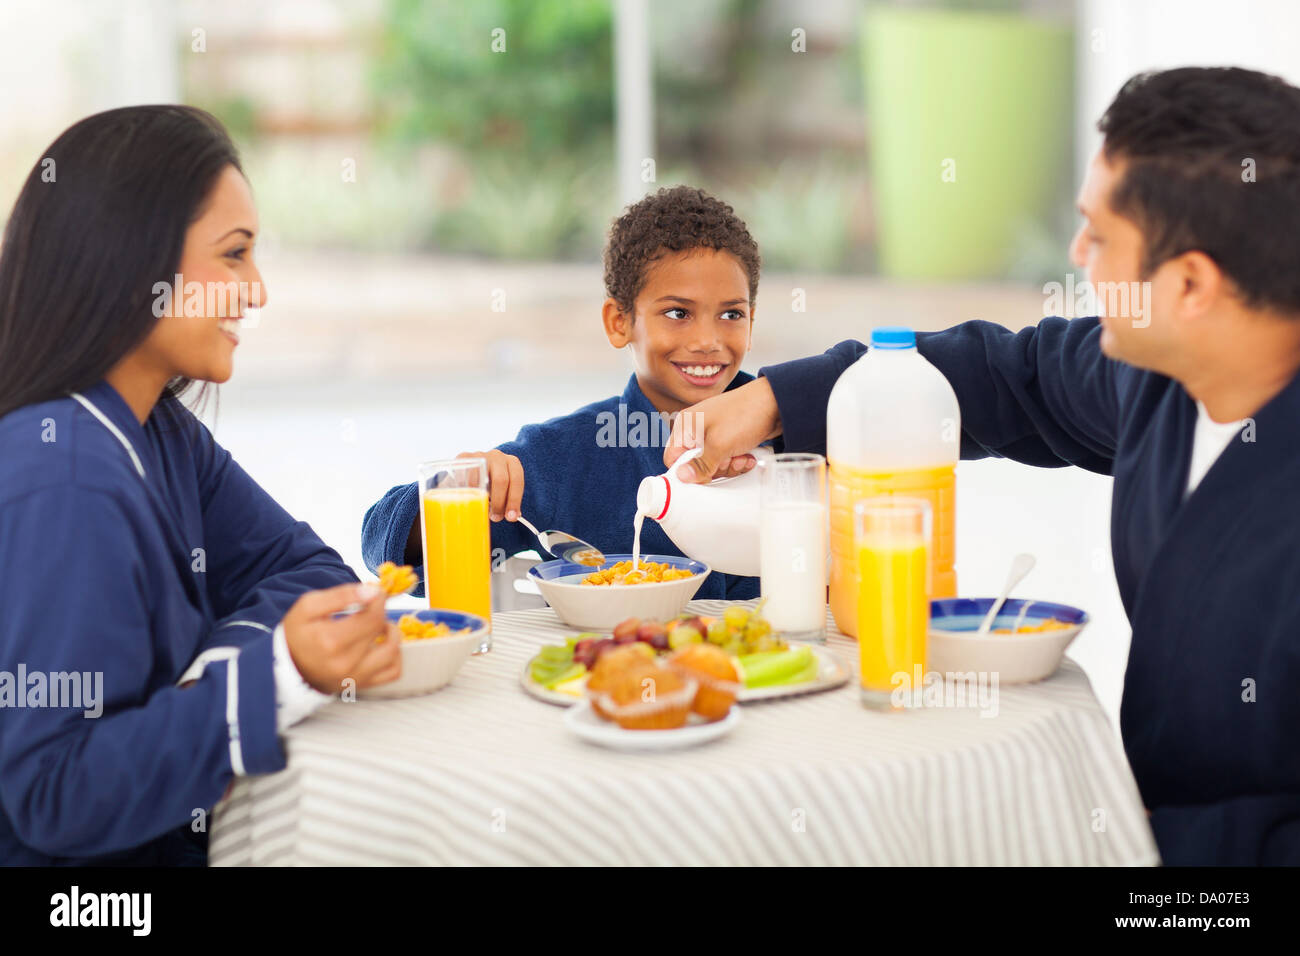 liebender Vater Gießen Milch in seinen Sohn Cornflakes während des Frühstücks Stockfoto